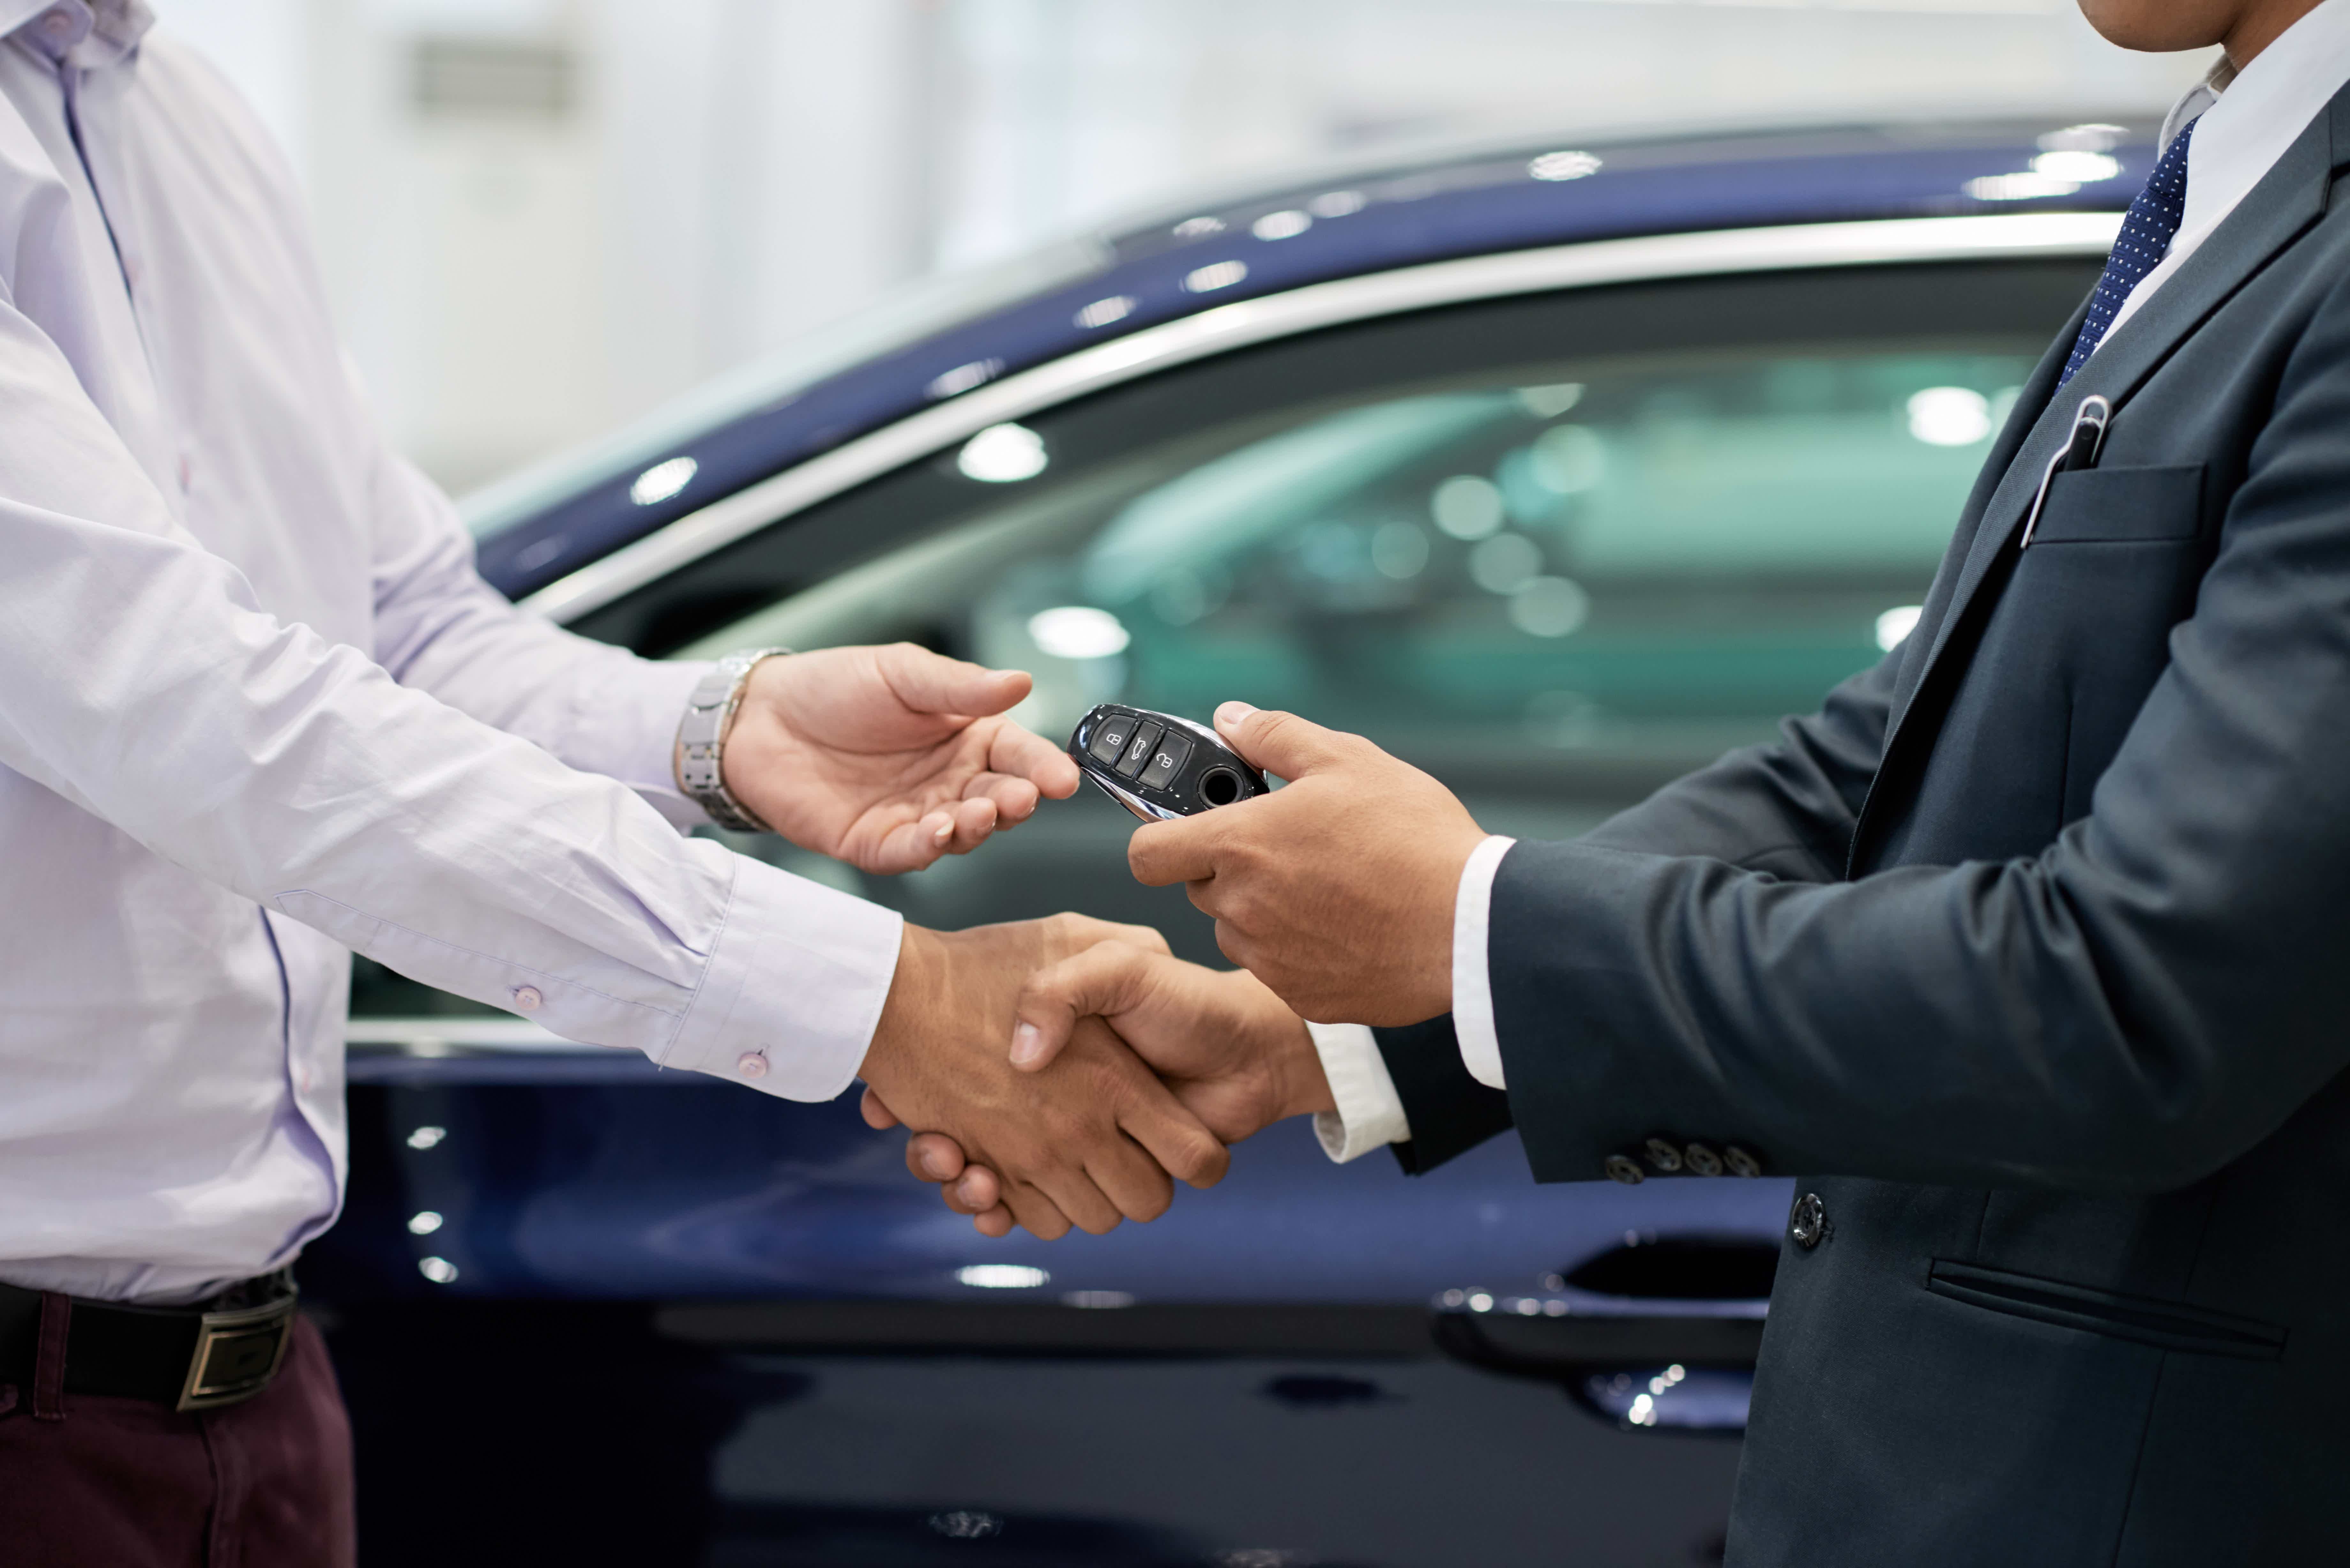 Conheça nossas dicas para economizar na hora de comprar seu carro. Fonte: AdobeStock